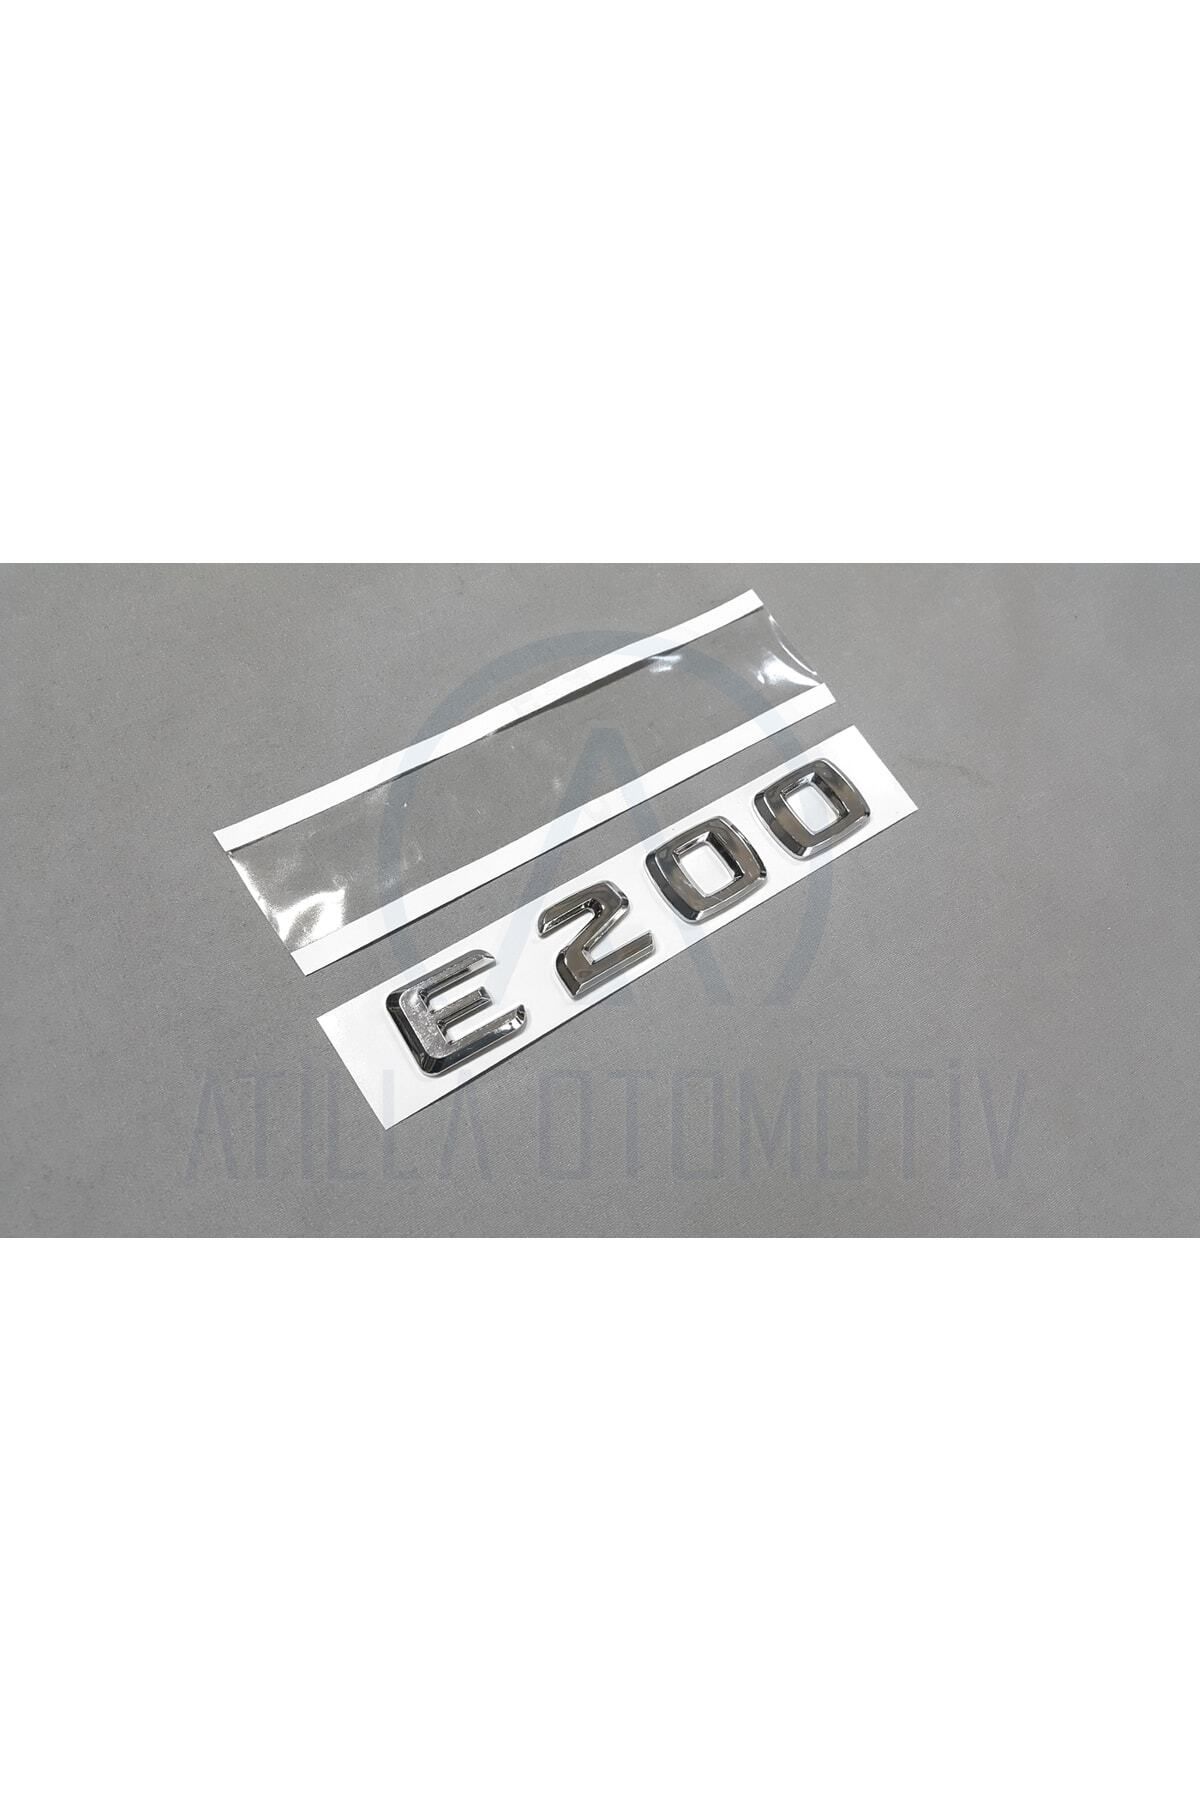 EDEXPORT Mercedes E Serisi W212 S212 2009-2013 Uyumlu E200 Bagaj Yazısı Krom